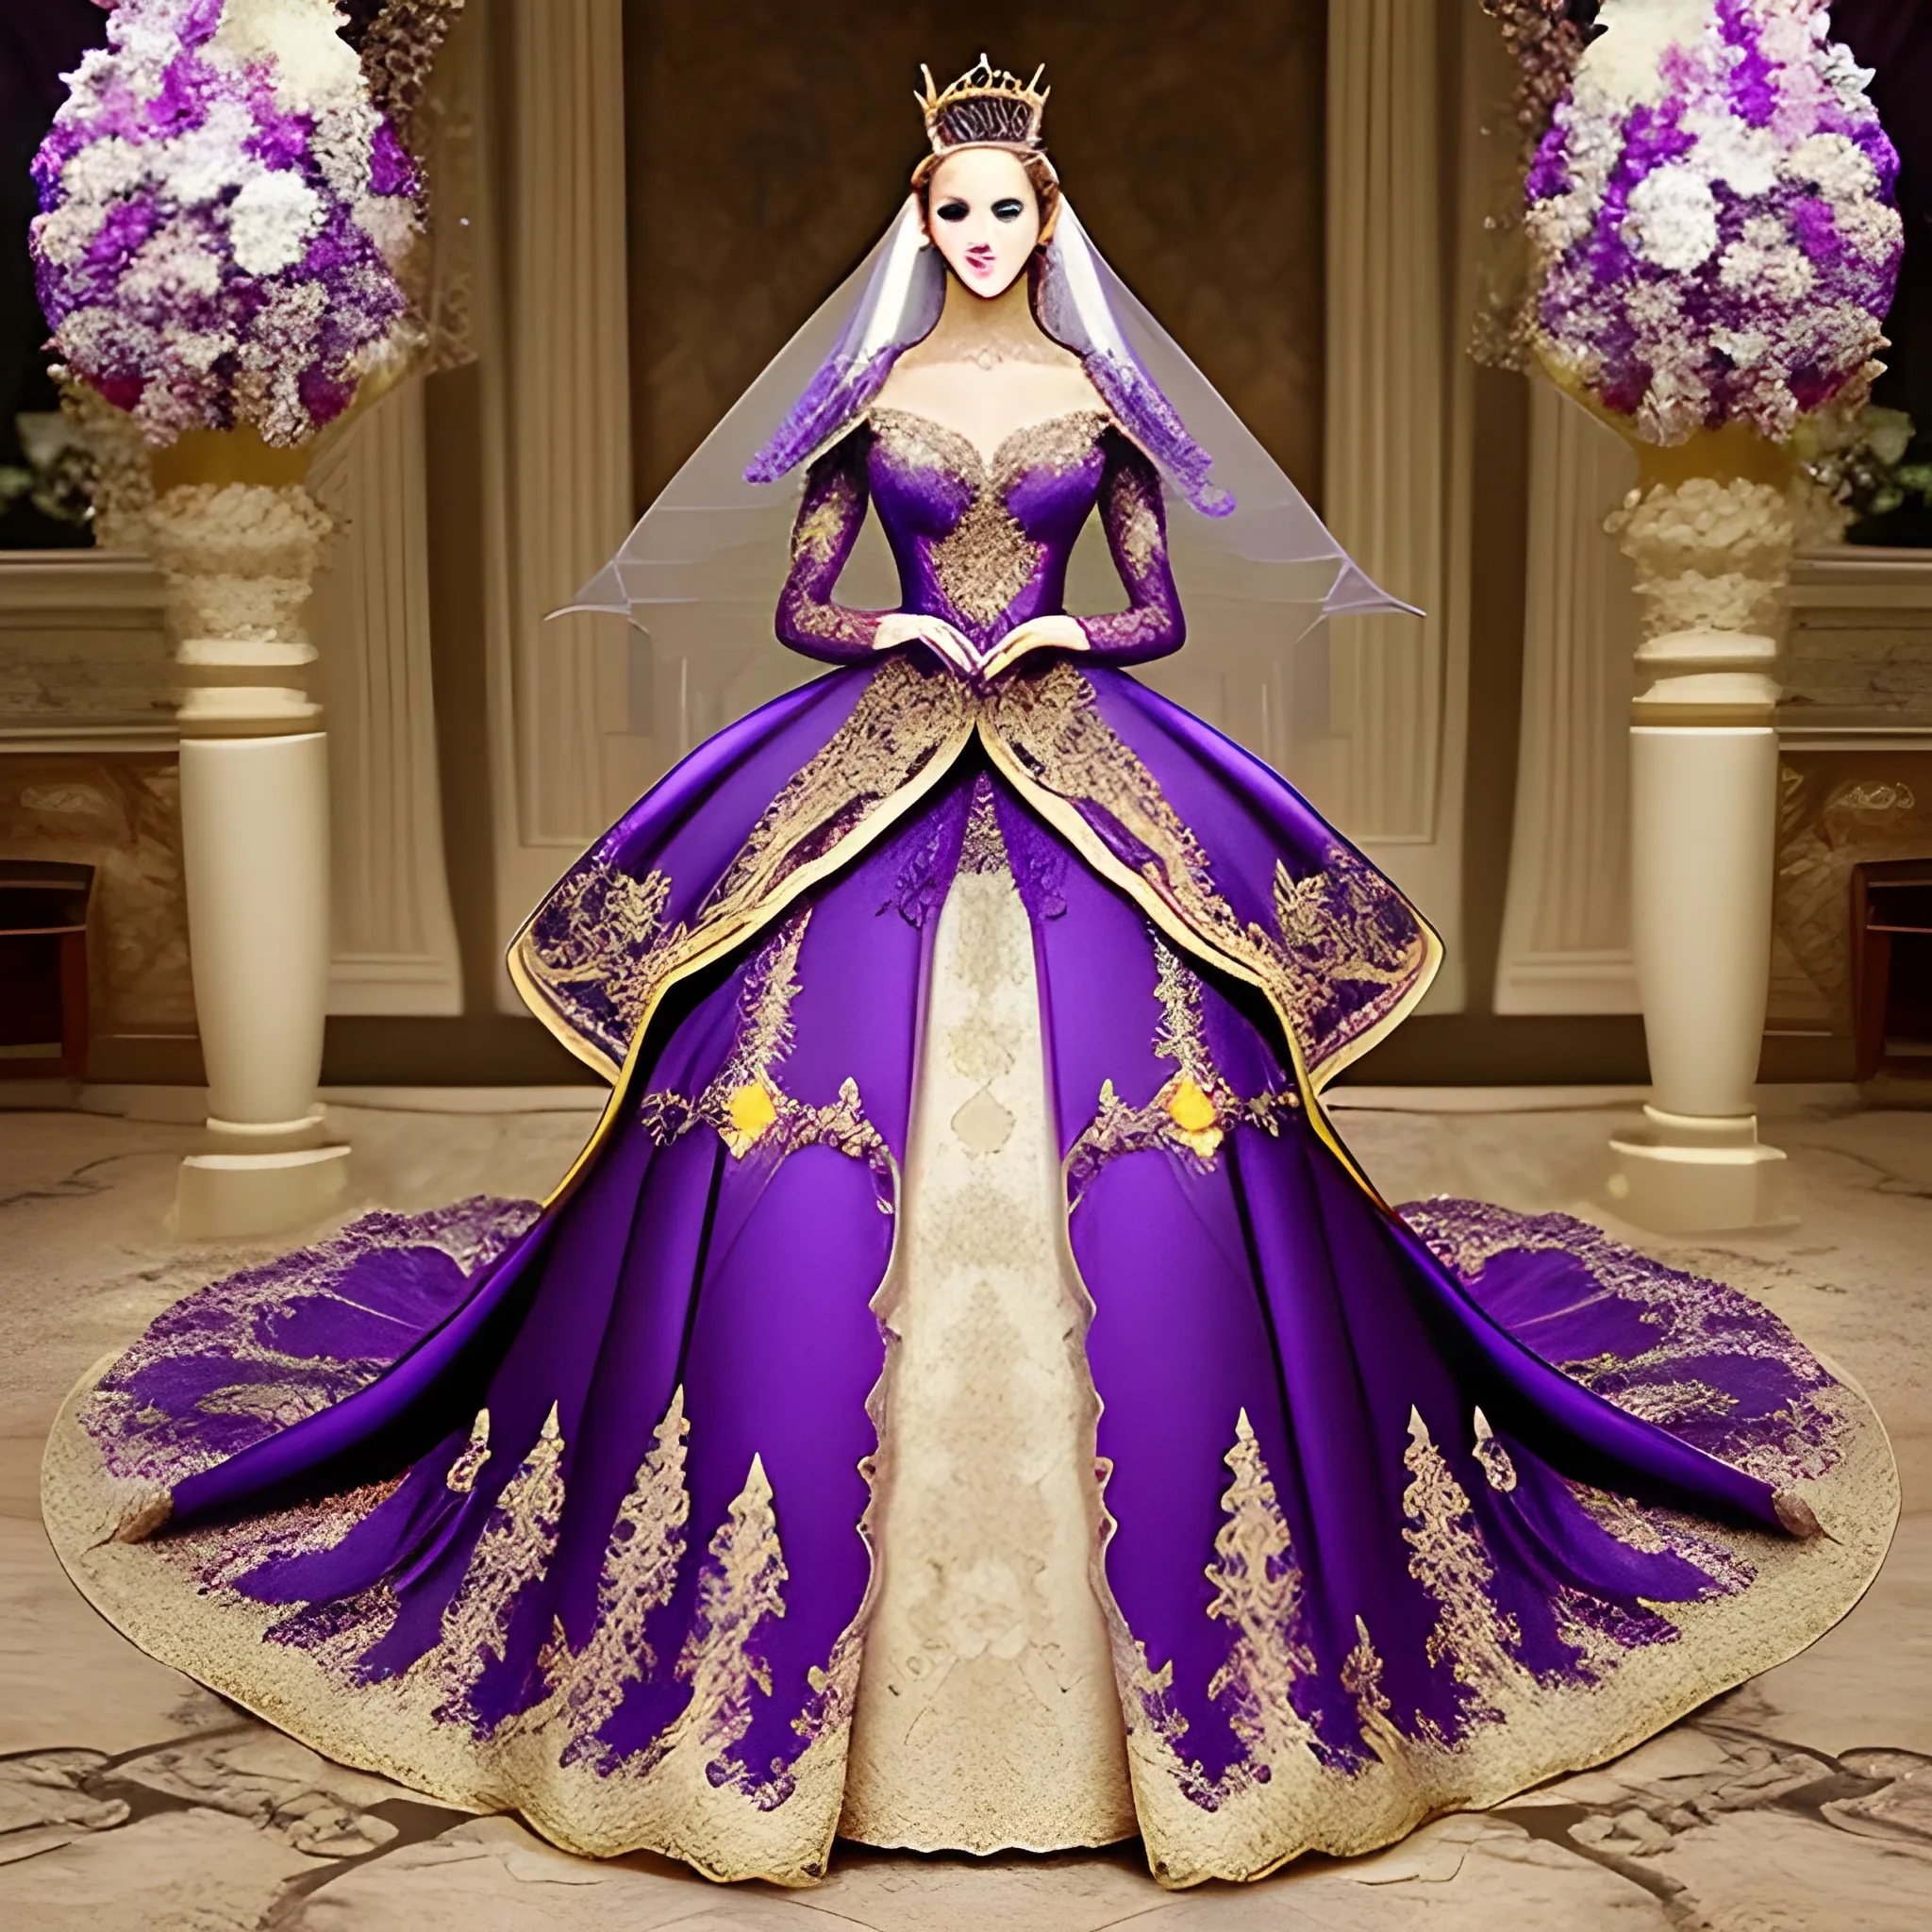 Raisa Black and White Mermaid Wedding Dress / Medieval Wedding Dress /  Renaissance Wedding Dress/fantasy Wedding Dress/gothic Wedding Dress - Etsy